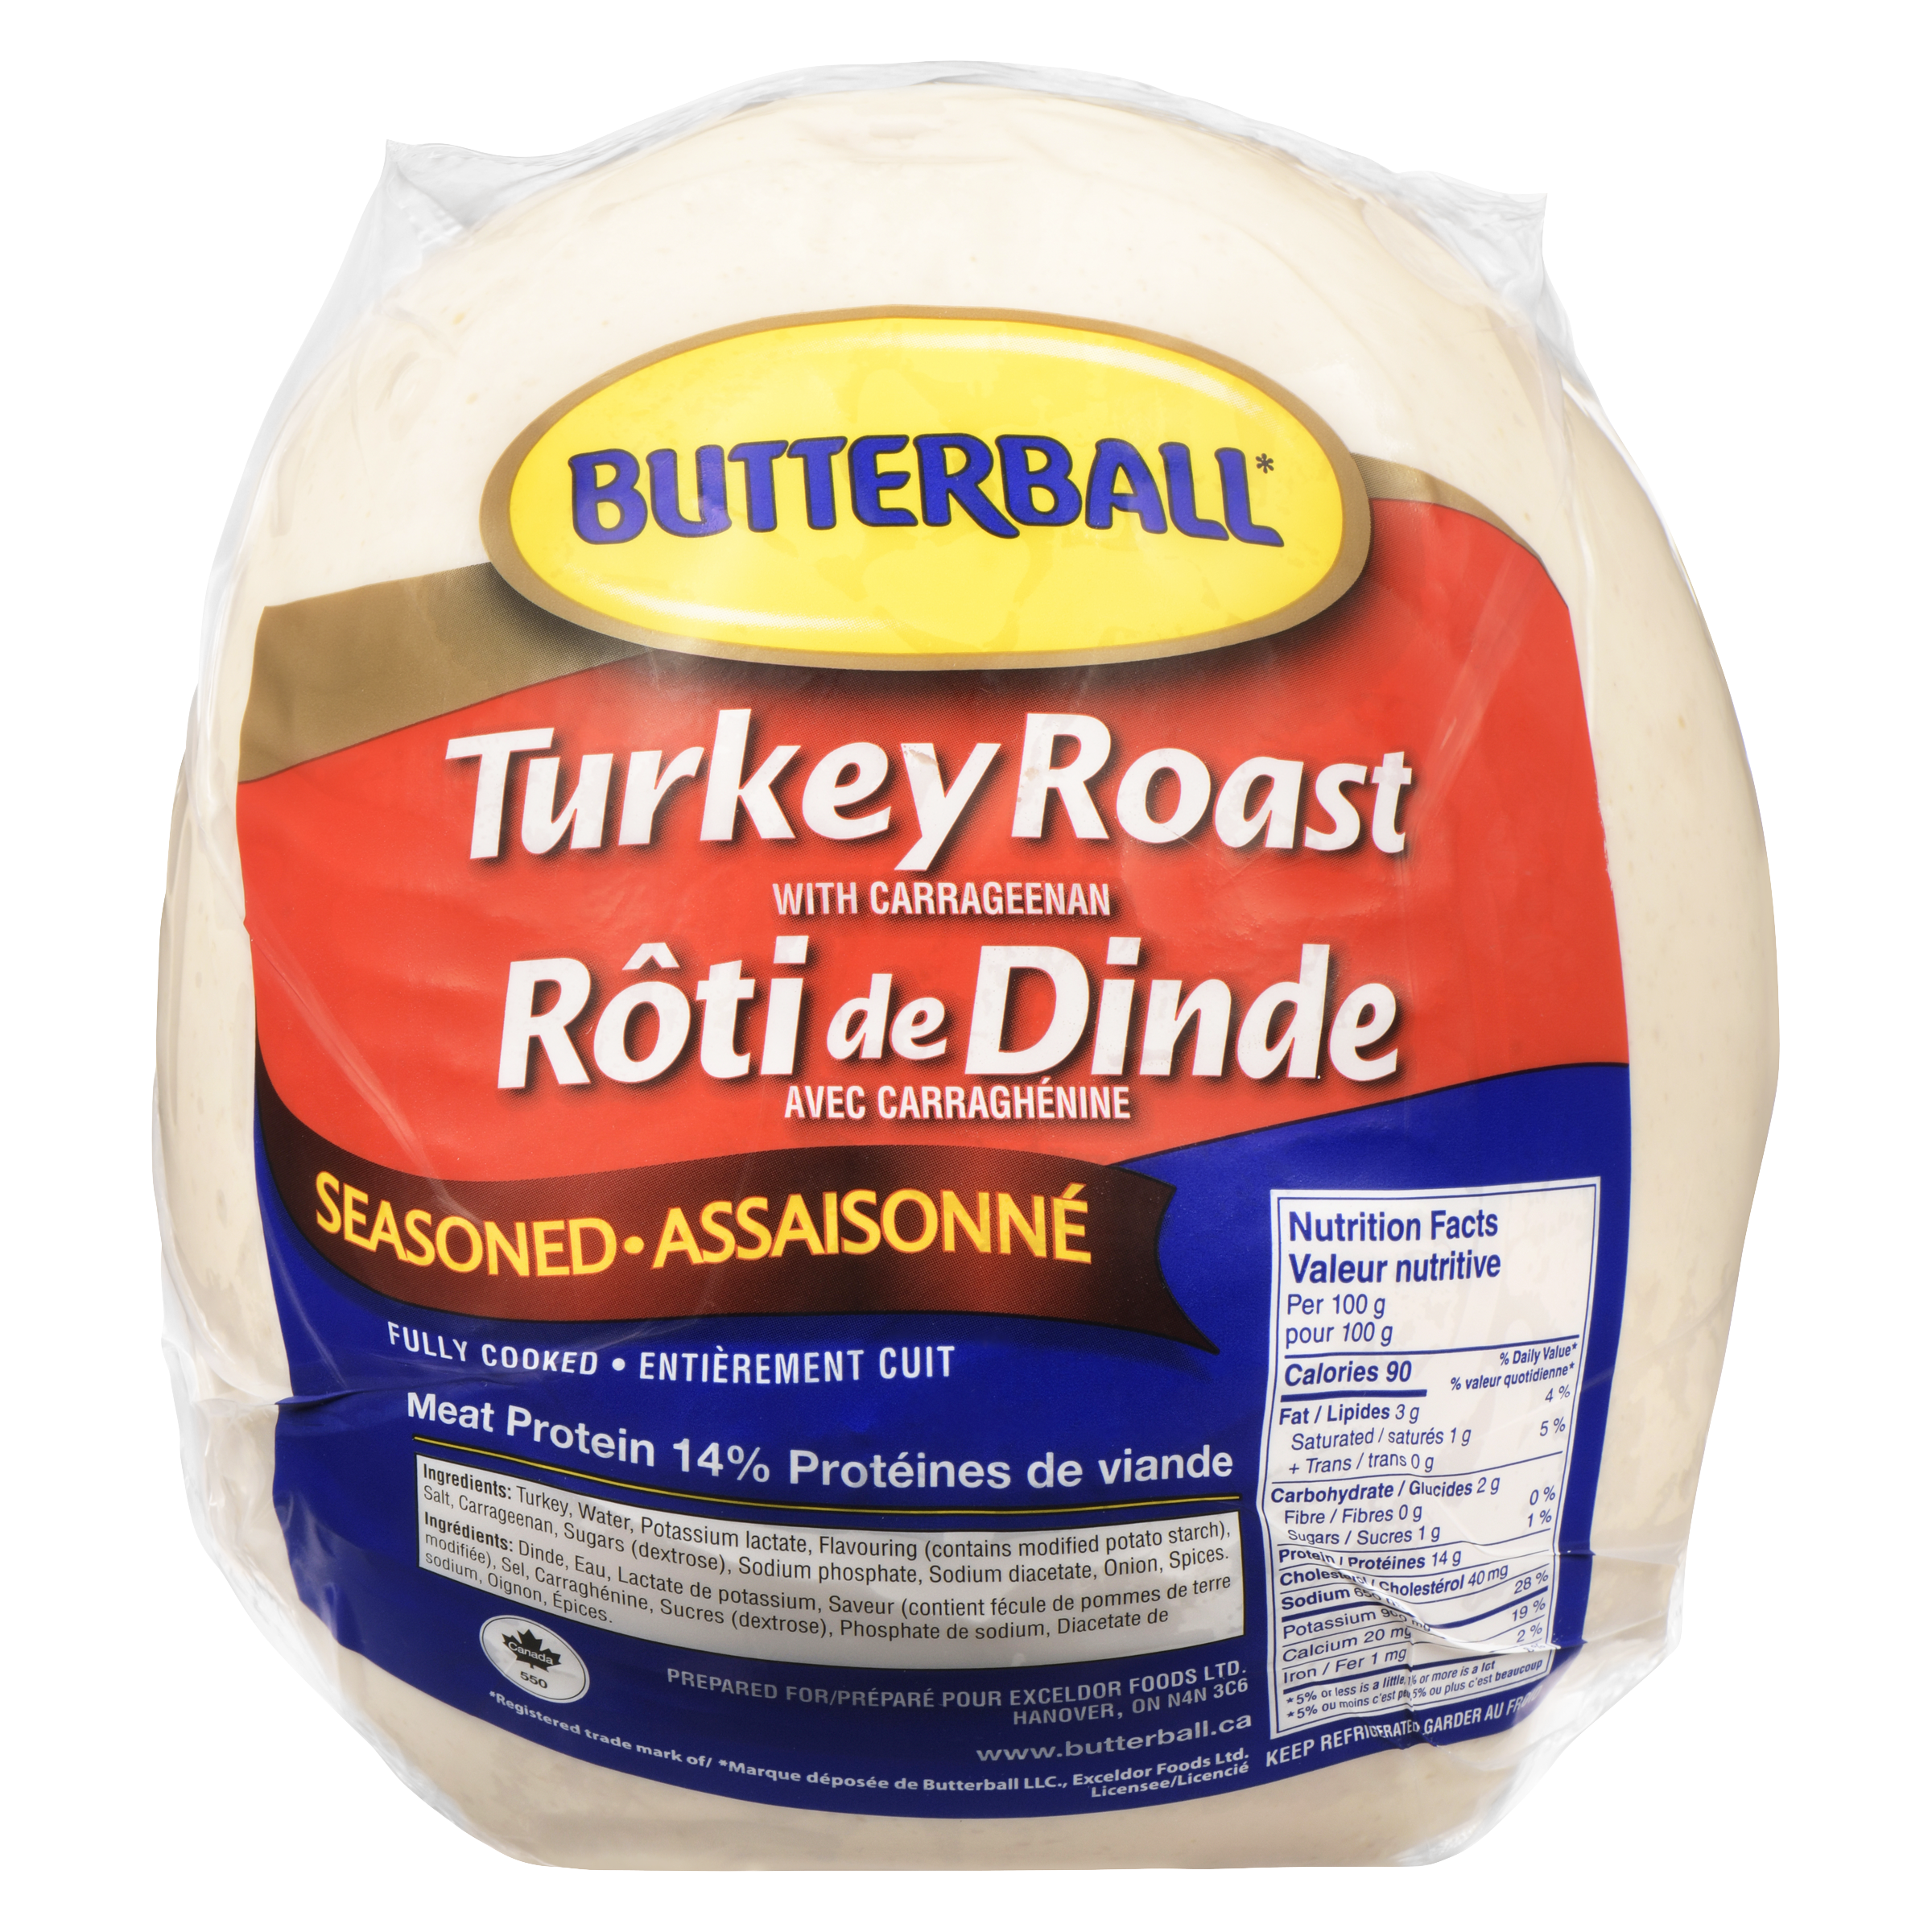 Butterball Seasoned Turkey Roast with Carrageenan in packaging